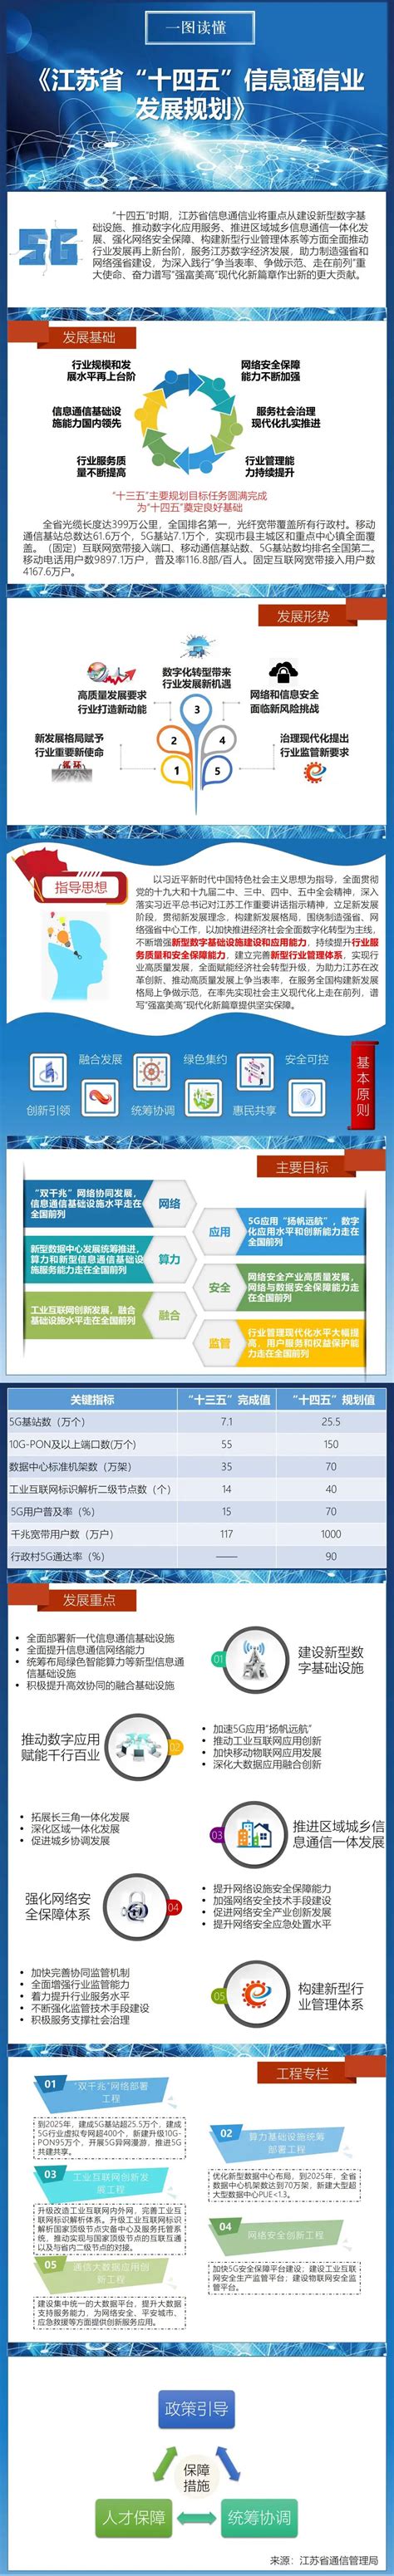 江苏省信息化与工业化融合示范企业-江苏中联电气股份有限公司